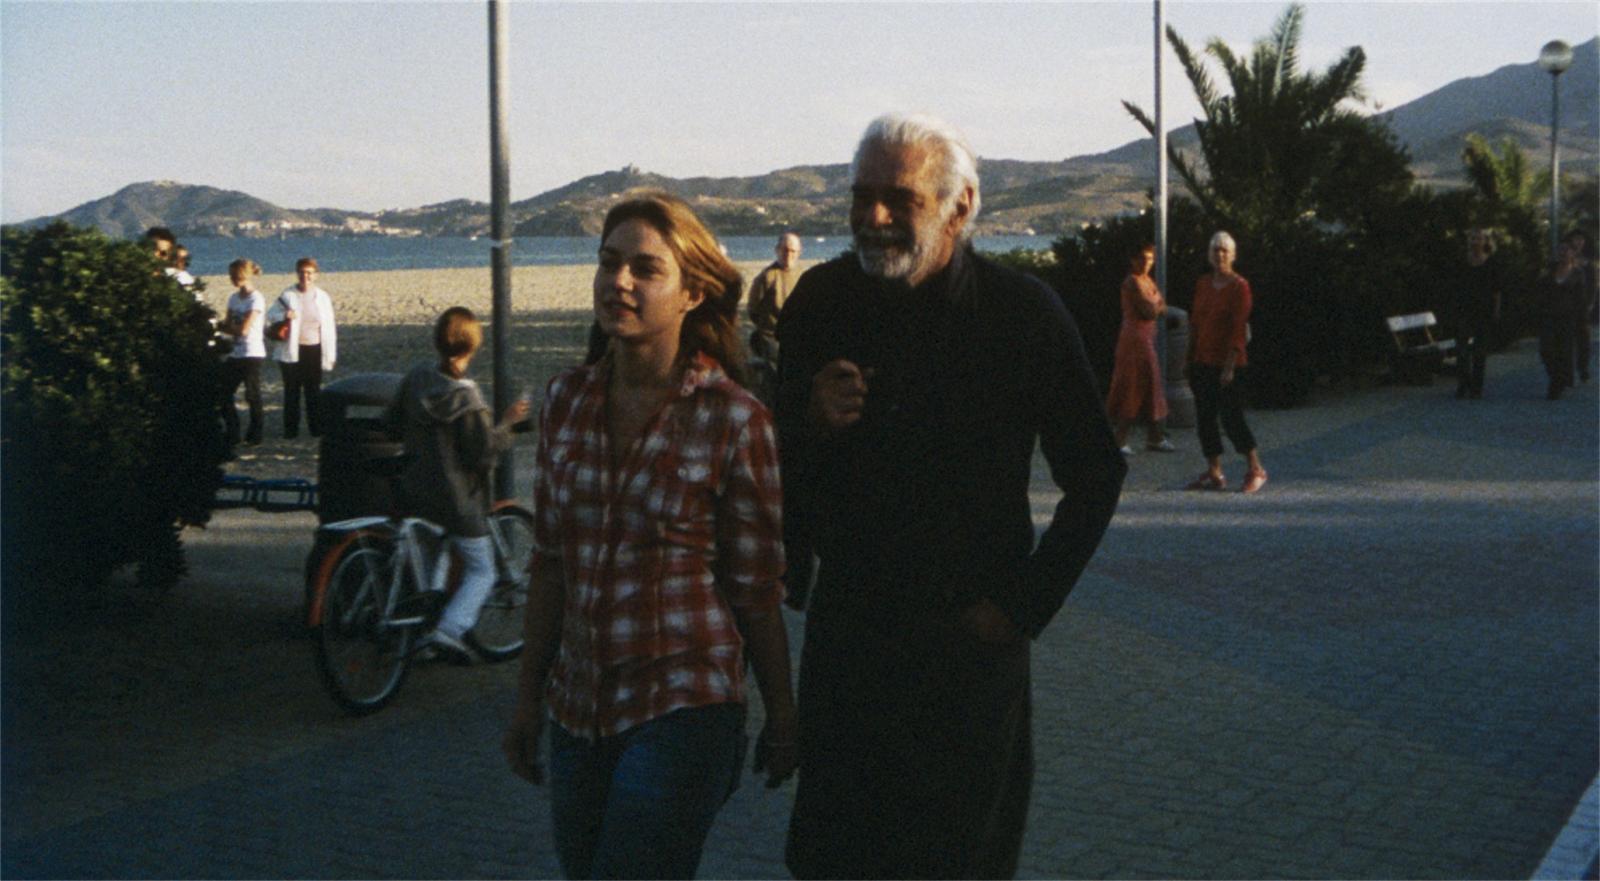 //www.occitanie-films.netUn homme d'âge mur et une jeune fille marchent sur une promenade